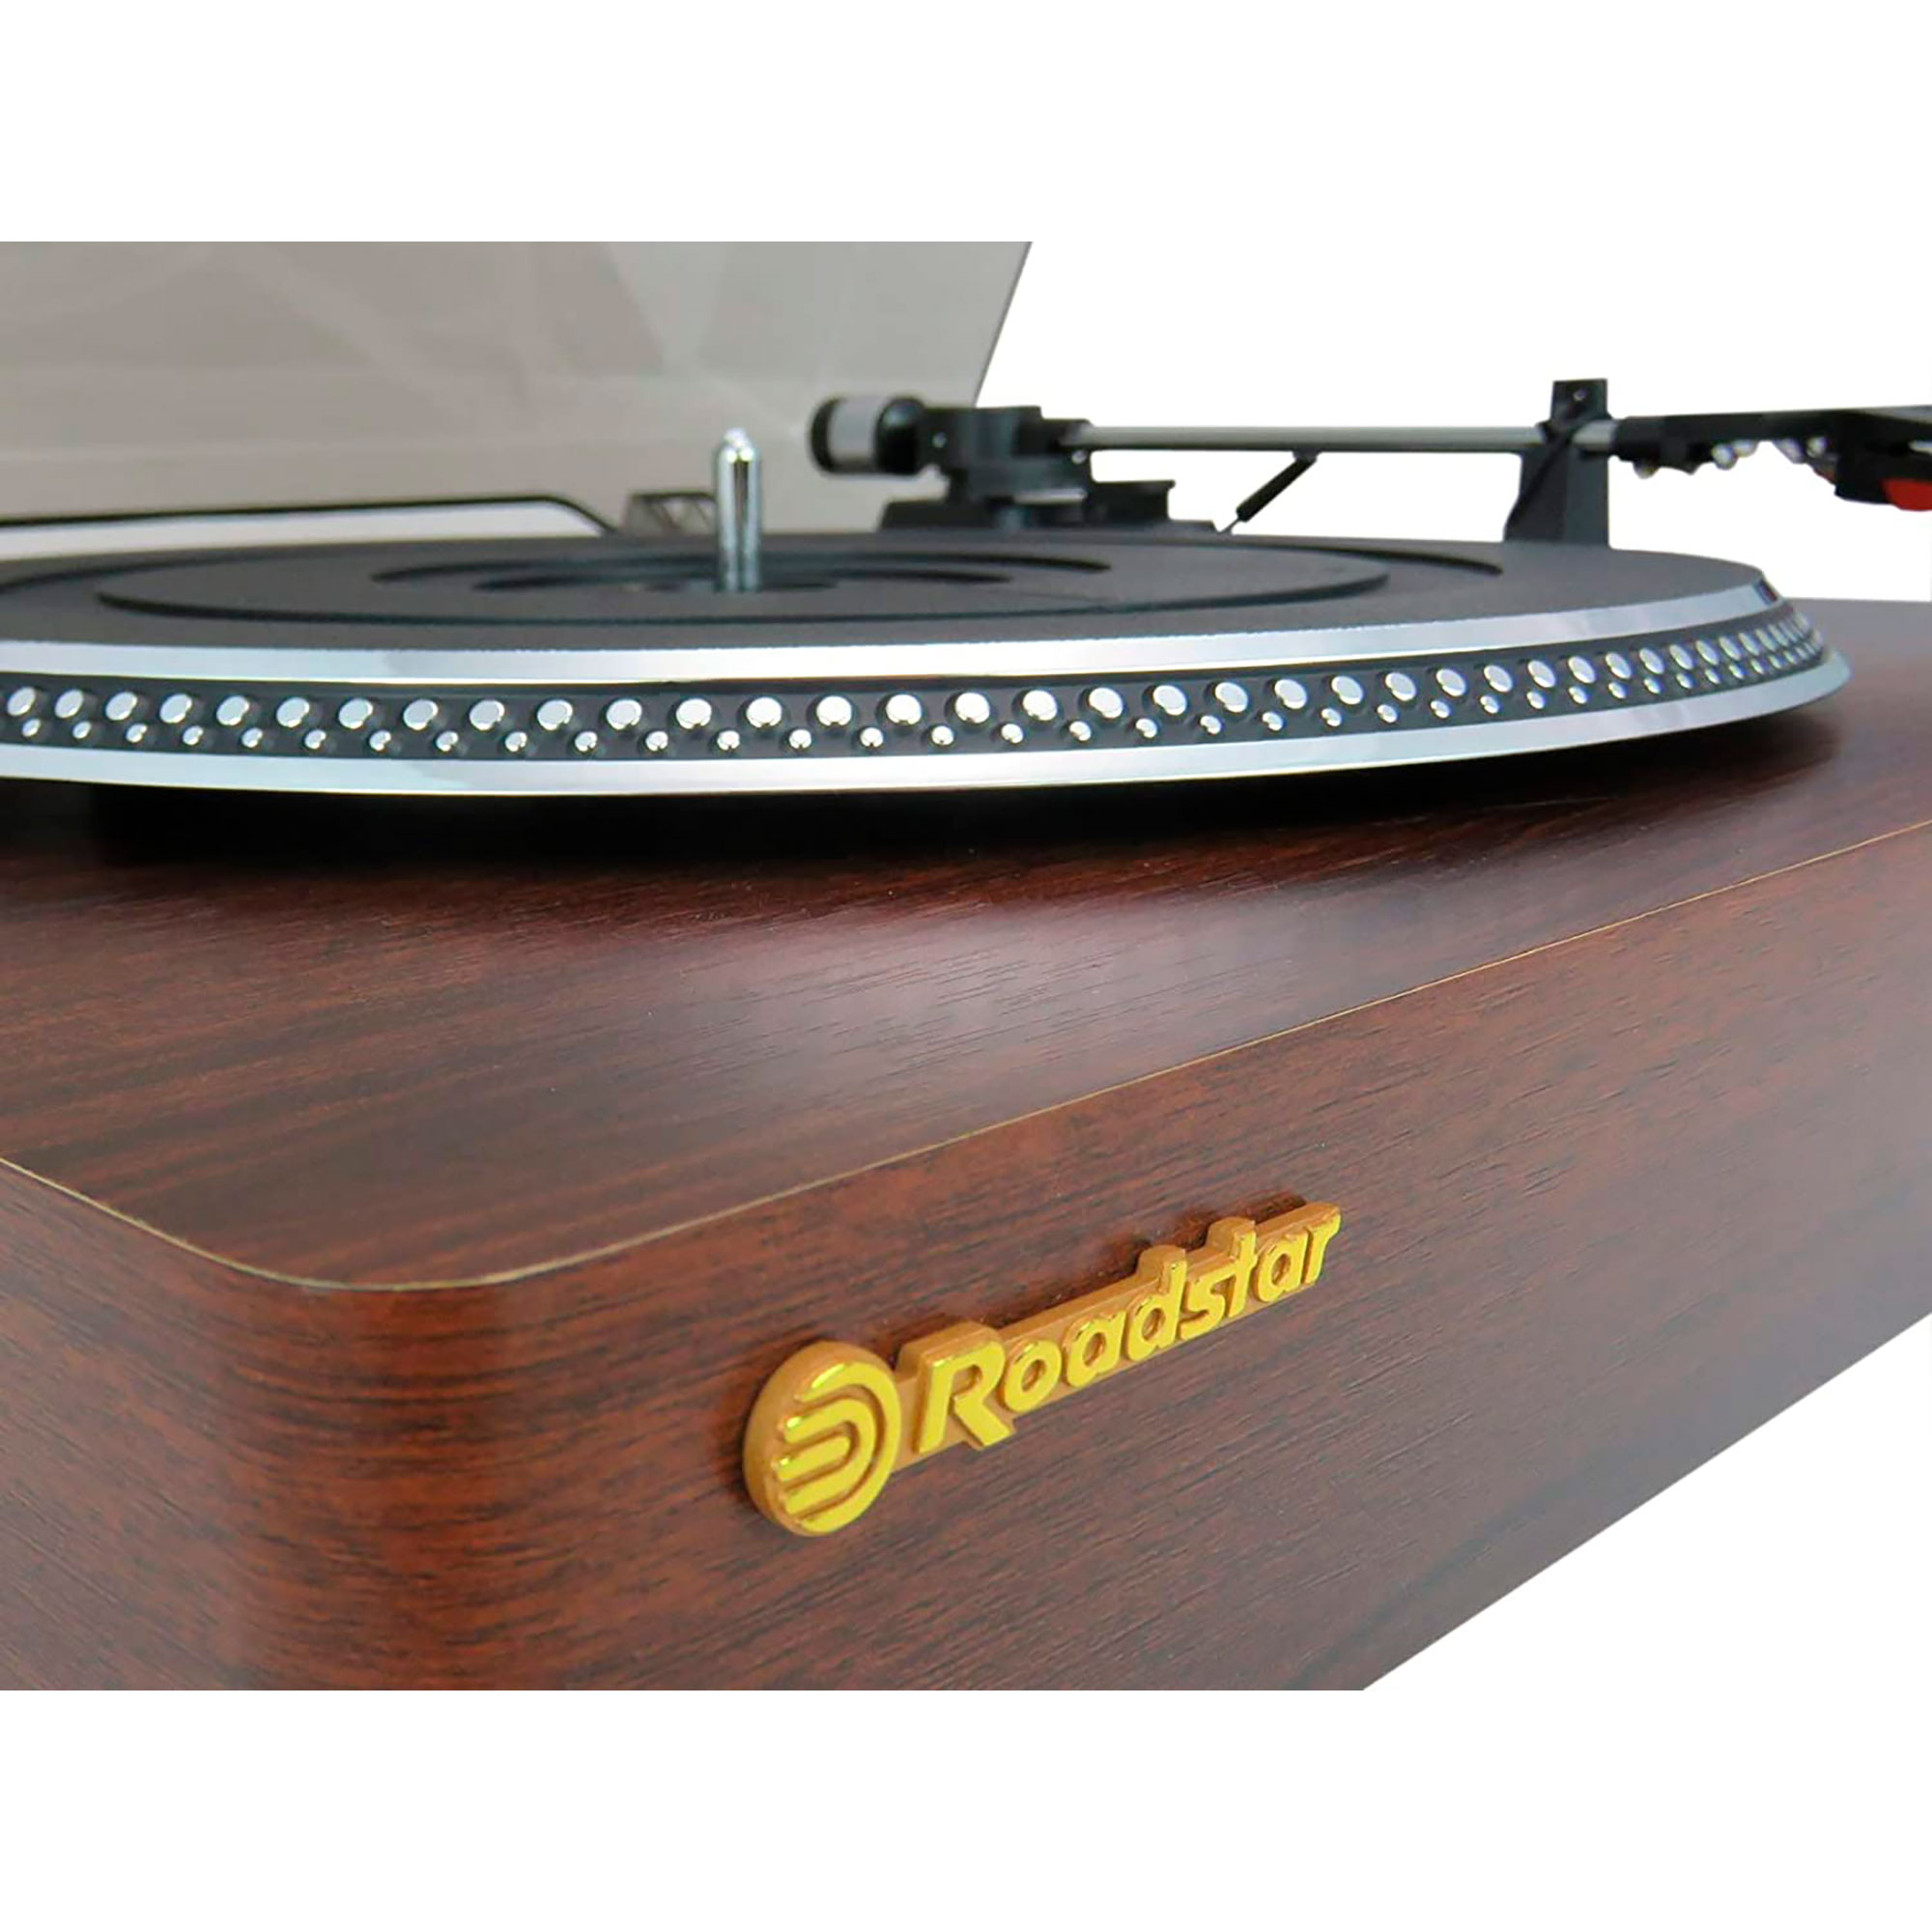 Retro ROADSTAR TT385BTT Holz Vintage Vinyl-Plattenspieler